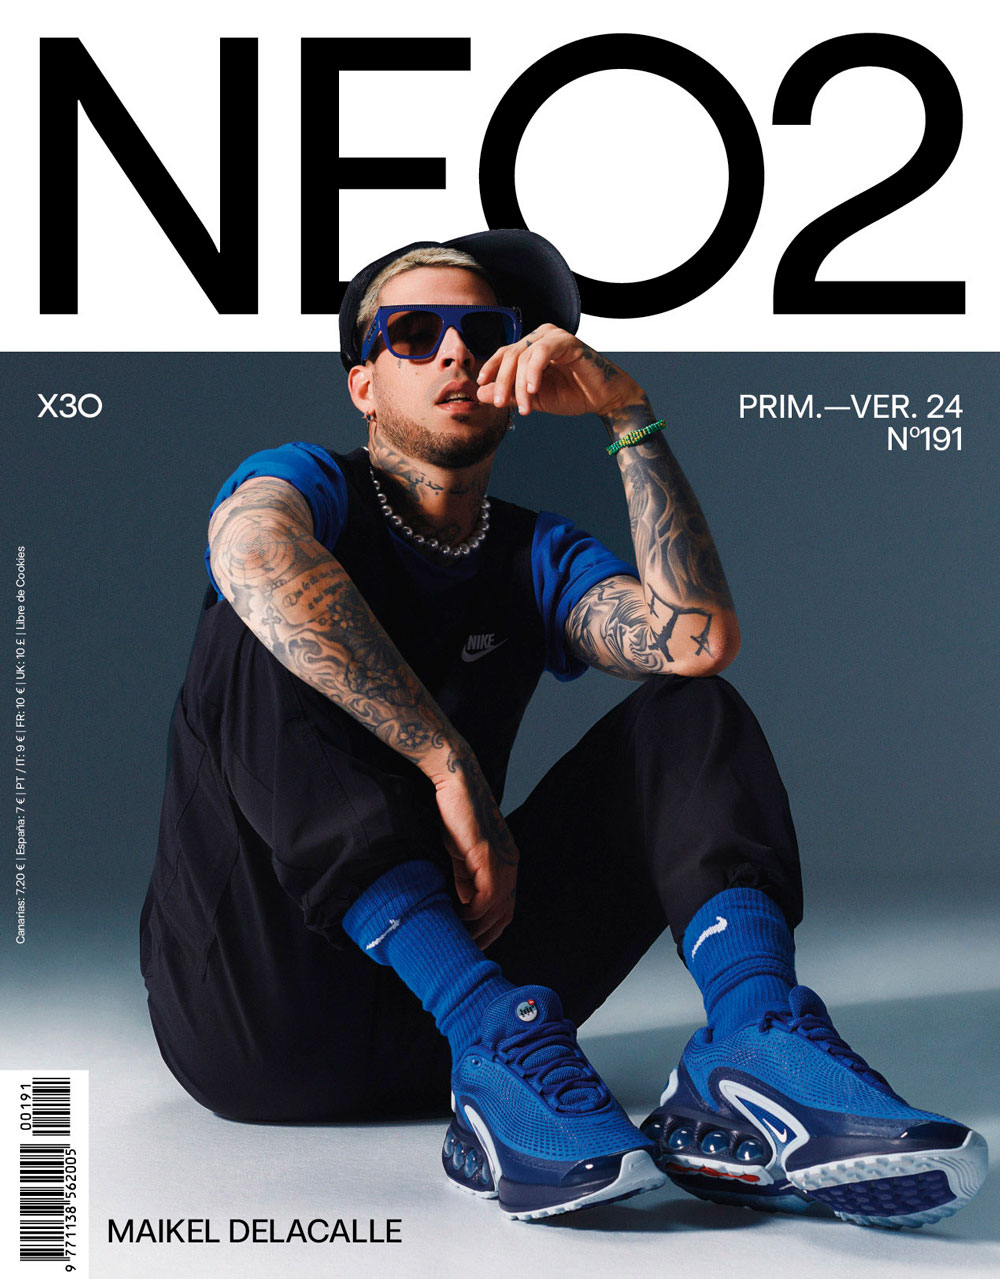 maikel delacalle portada revista neo2